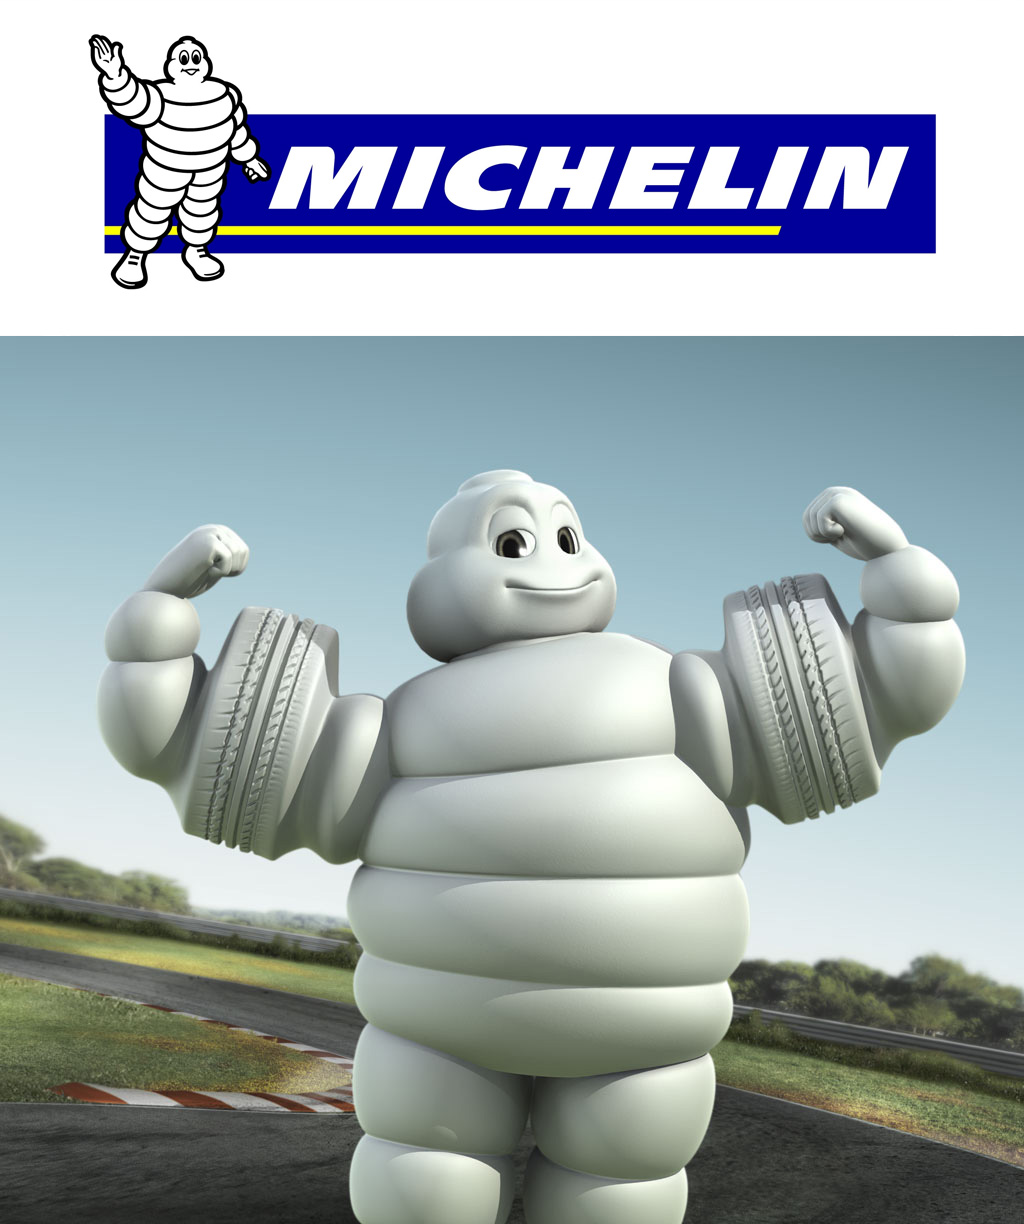 Например реклама шин Michelin содержит узнаваемый персонаж Бибендум, используемый для усиления запоминания рекламного сообщения